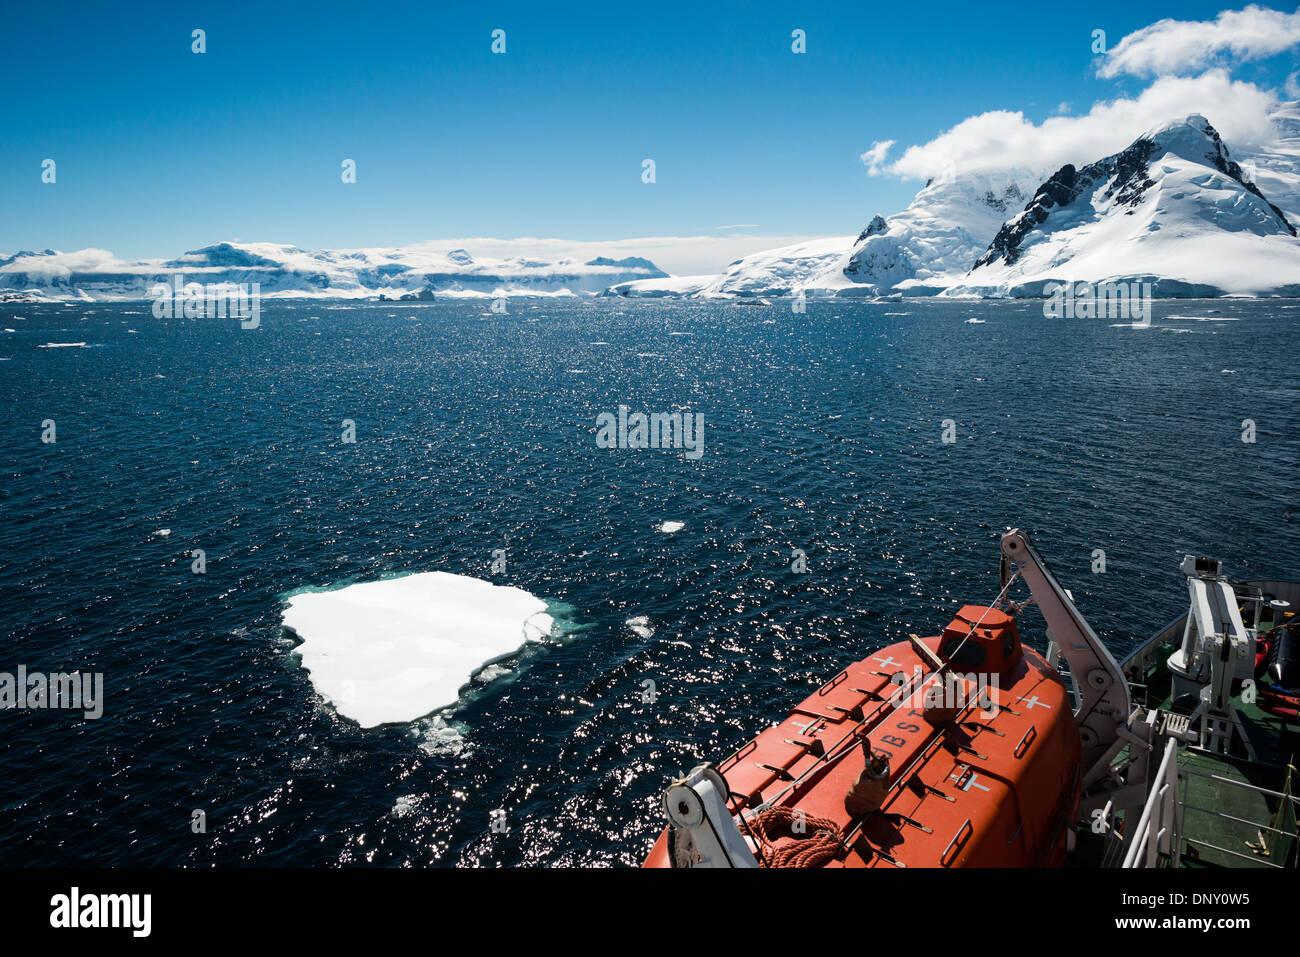 Antarktis - ein Kreuzfahrtschiff fließt durch einen Kanal, vorbei an kleinen Eisbergen. Im Vordergrund unten rechts am Rahmen ist eines der rettungsboote des Schiffes. Stockfoto